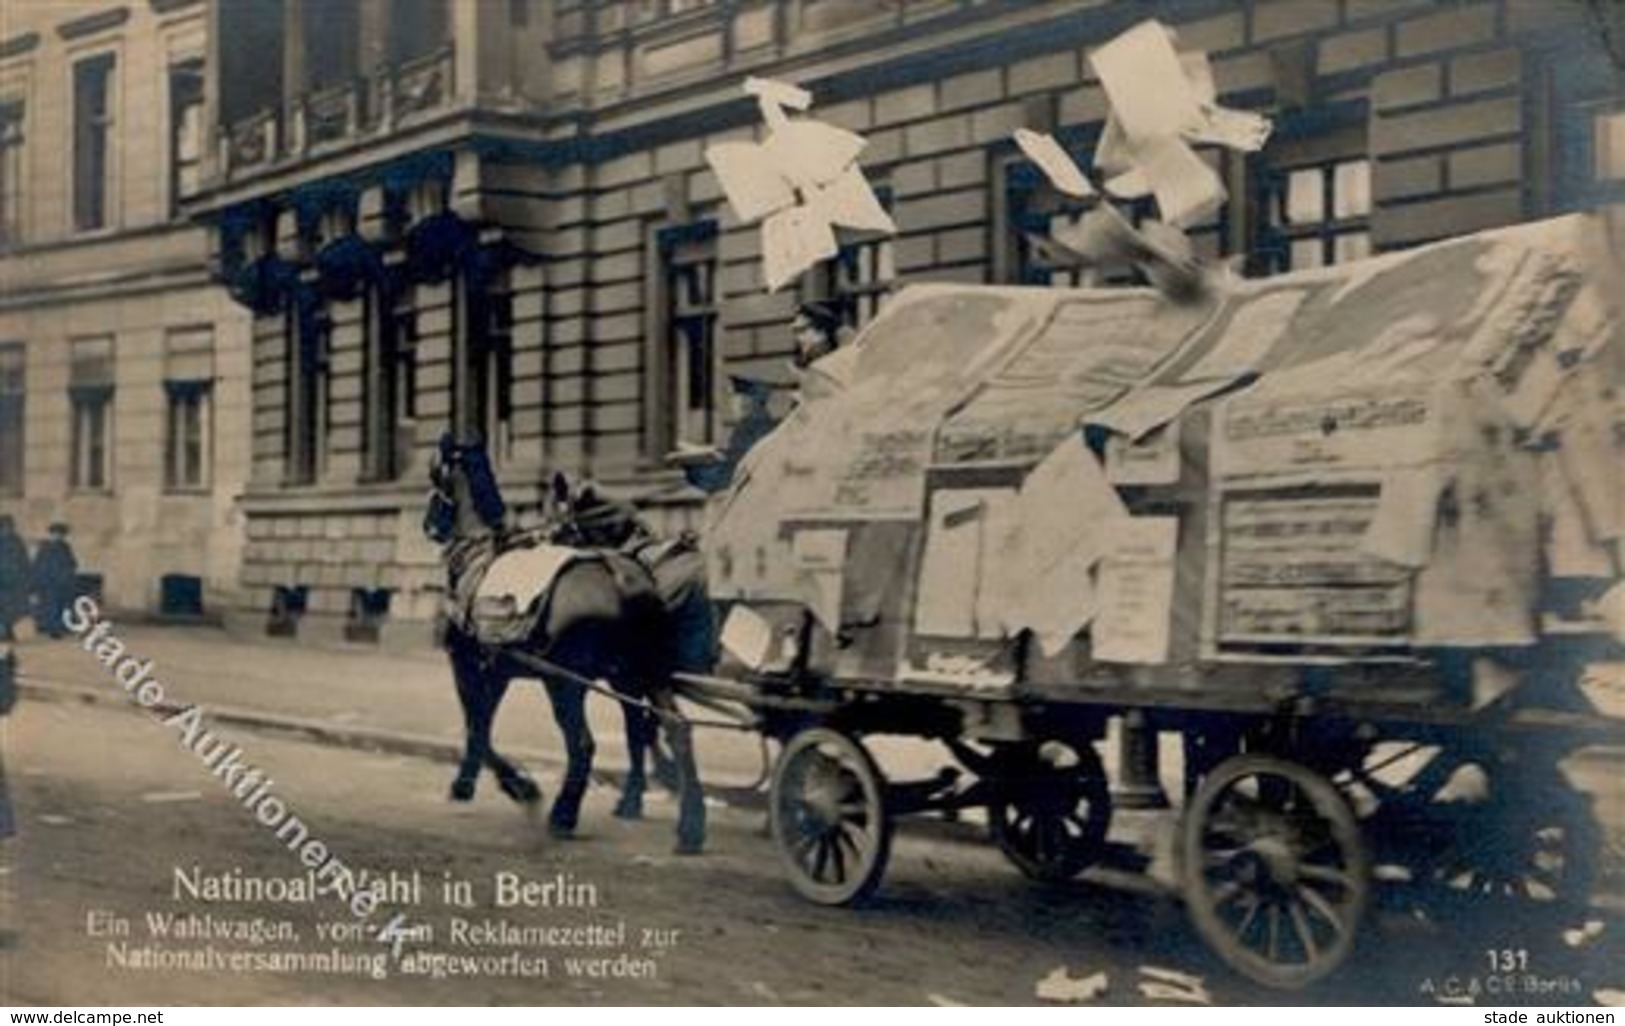 REVOLUTION BERLIN 1919 - NATIONAL-WAHL In Berlin - Ein Wahlwagen Von Dem Reklamezettel Zur Nationalversammlung Abgeworfe - Krieg